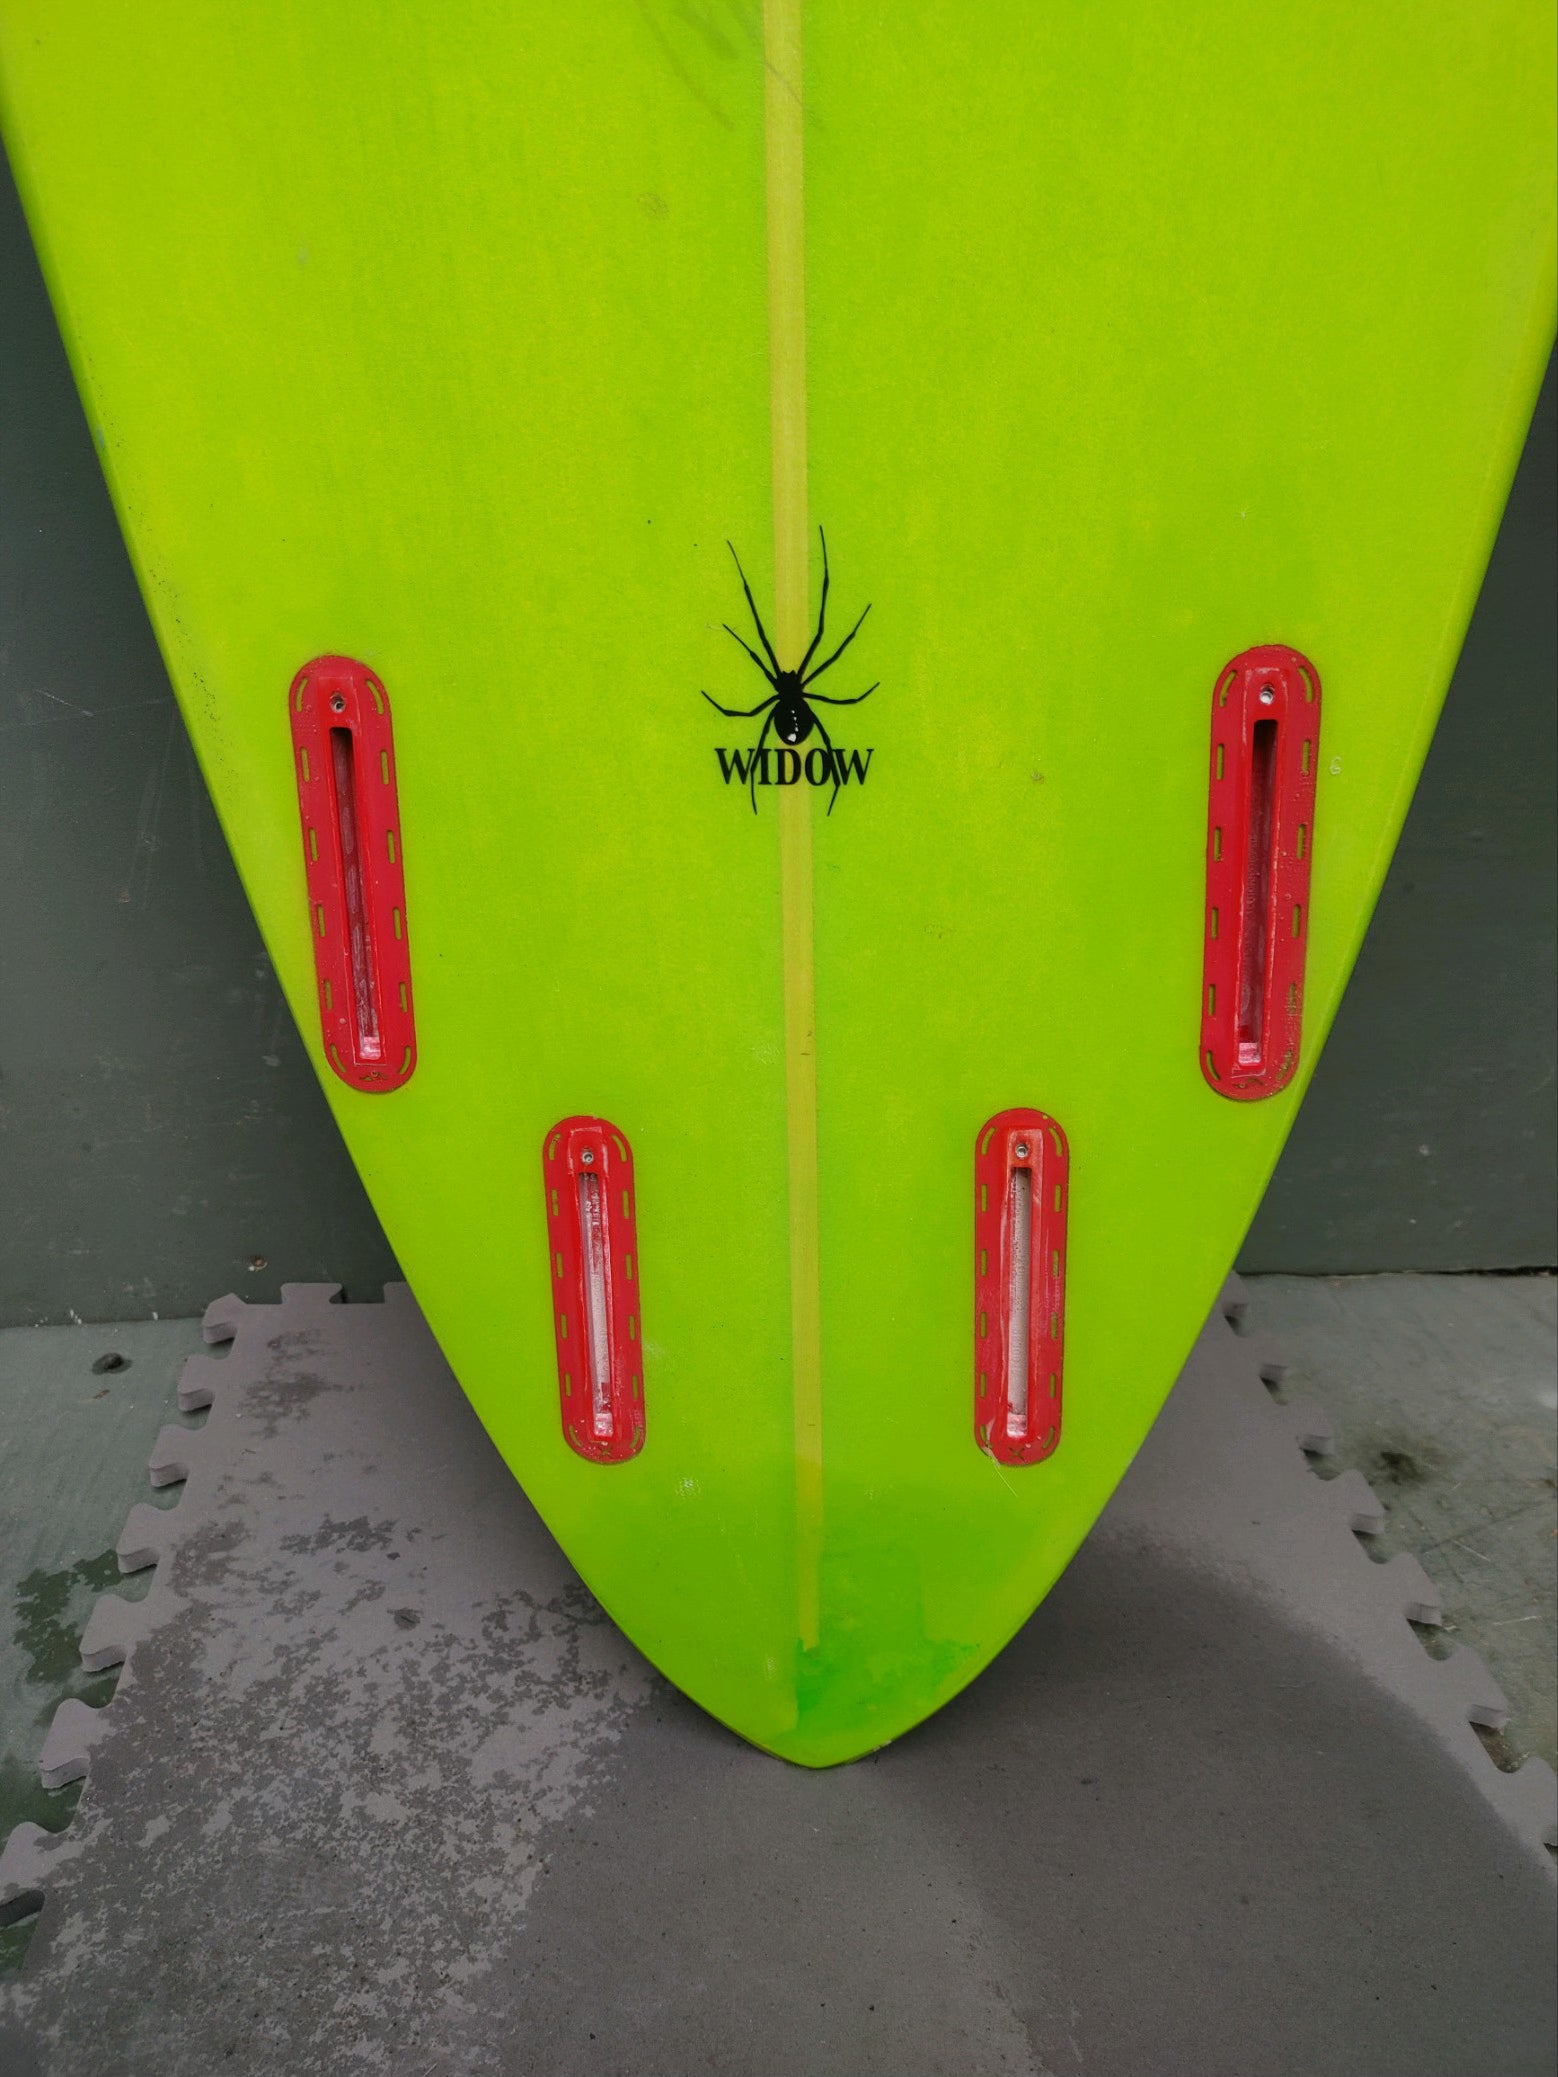 USED Brett Surfboards - 8&